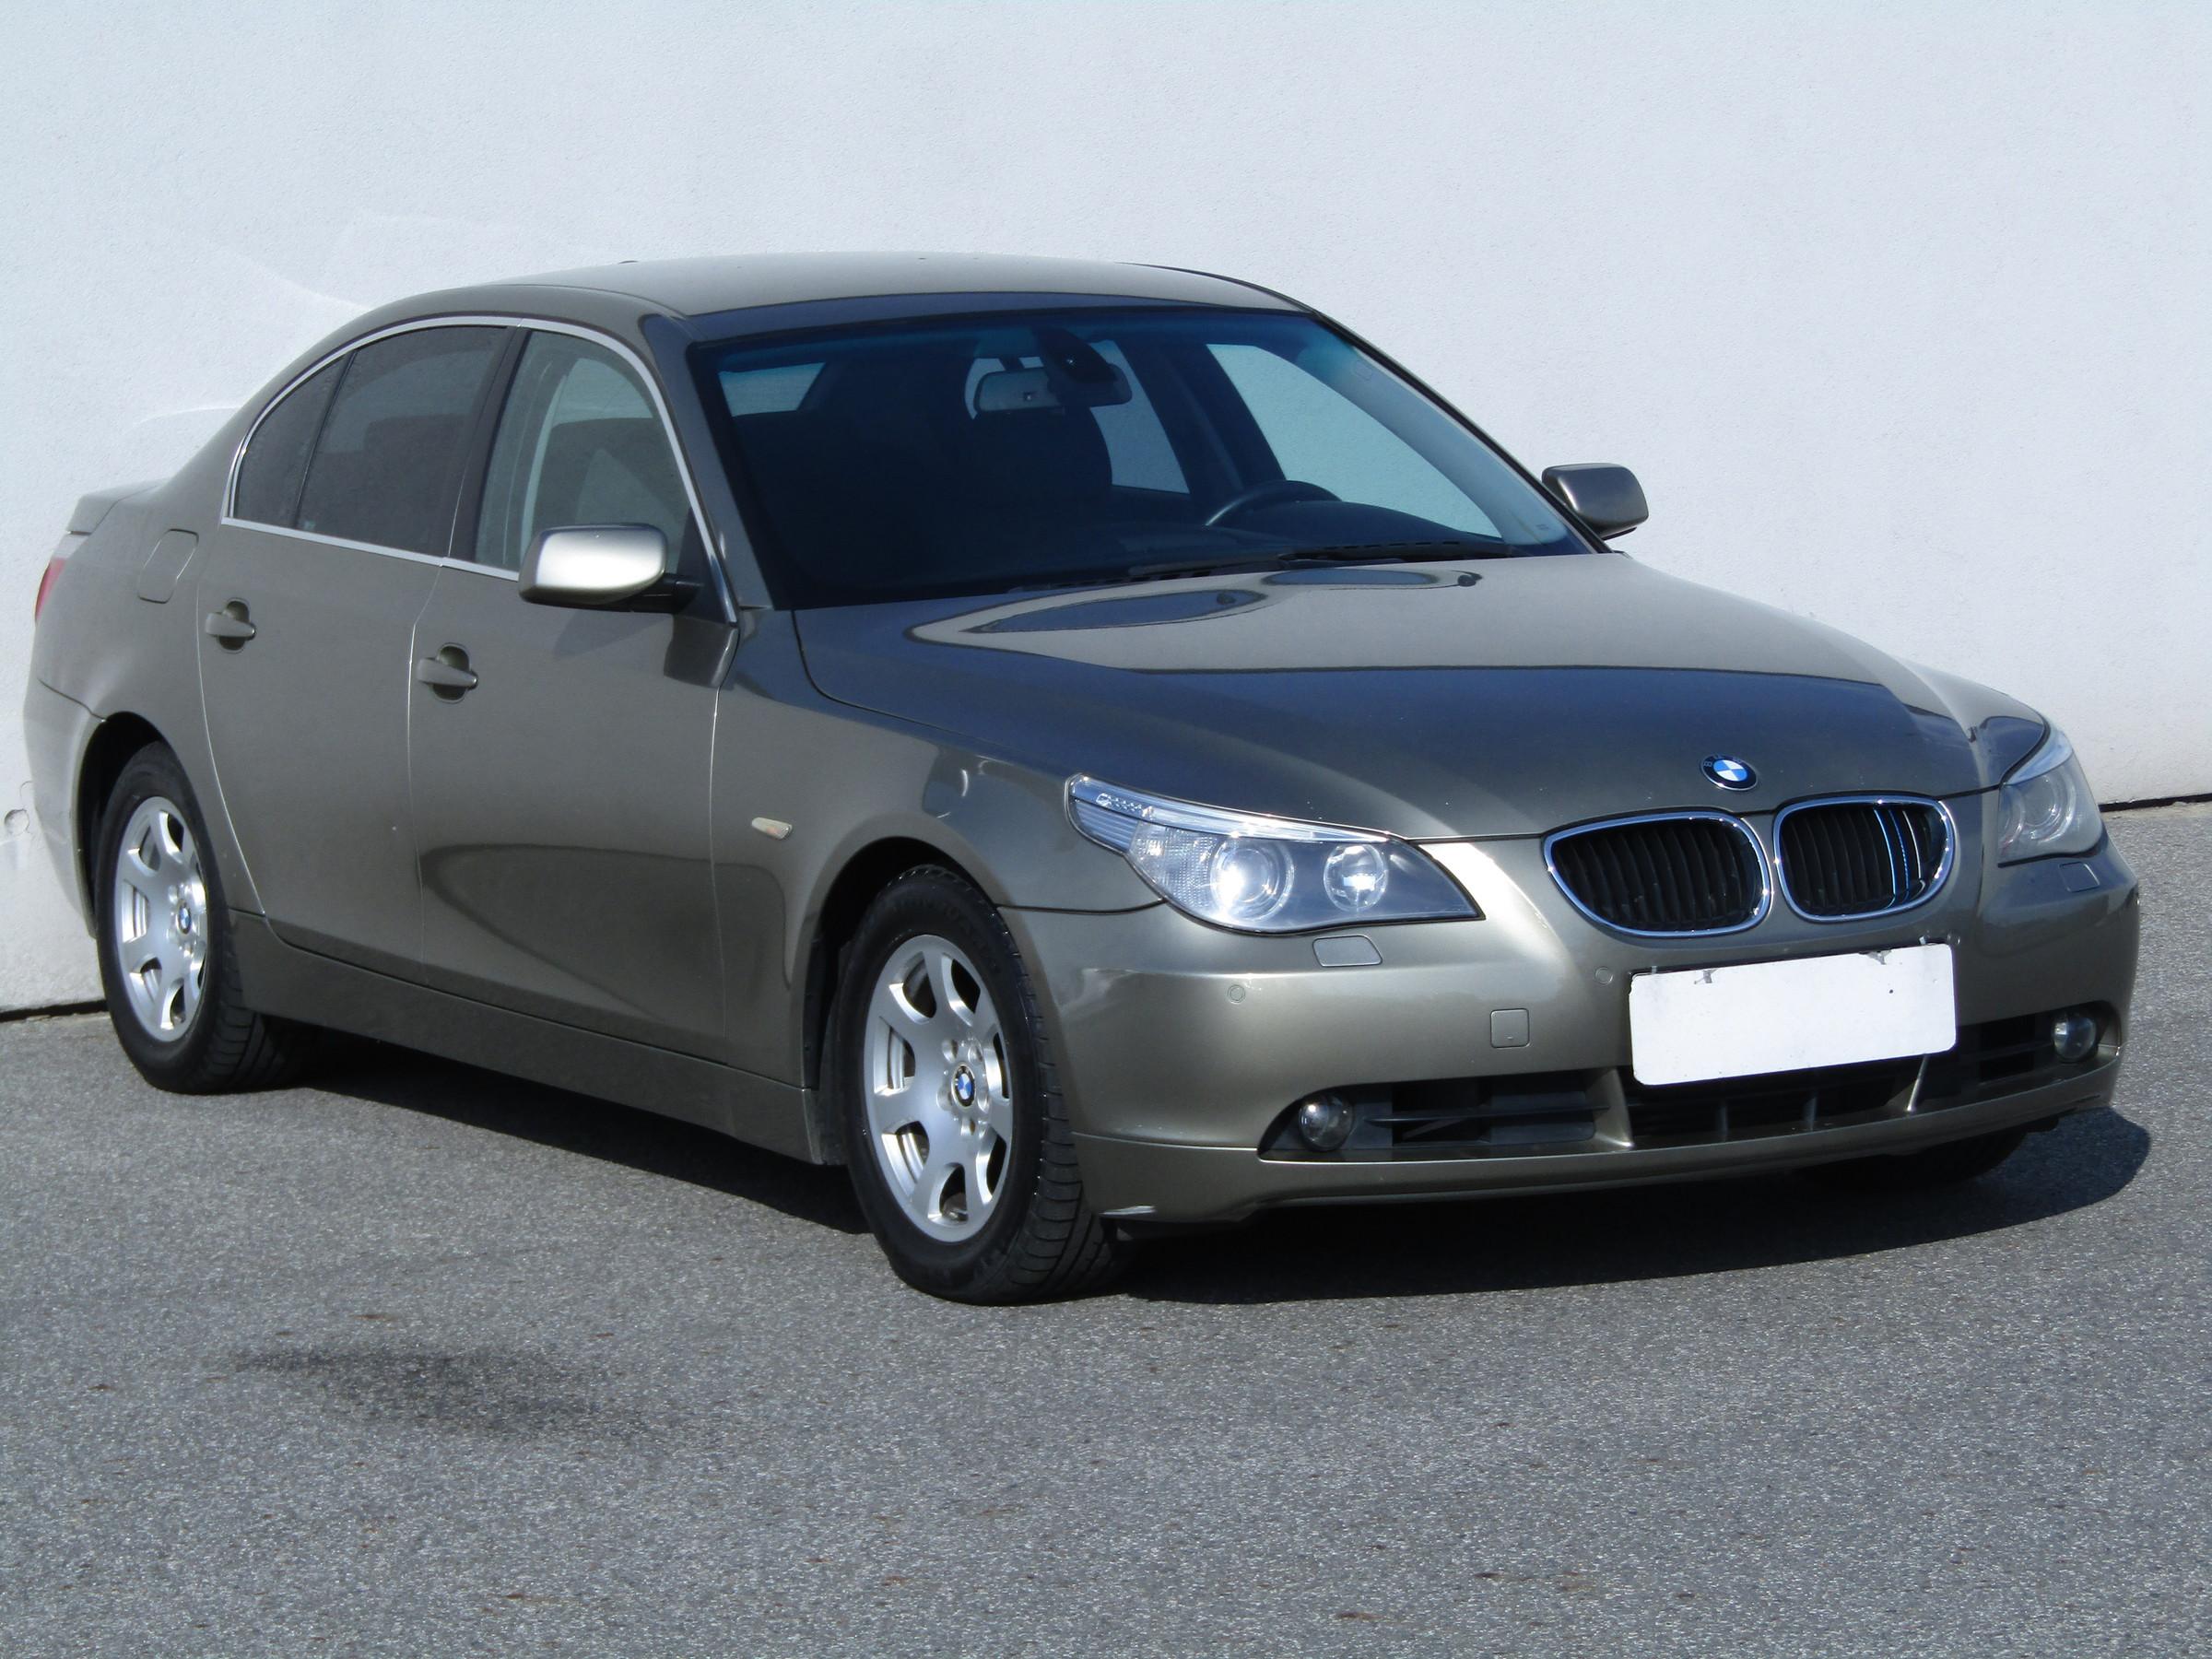 BMW Řada 5, 2005 - celkový pohled